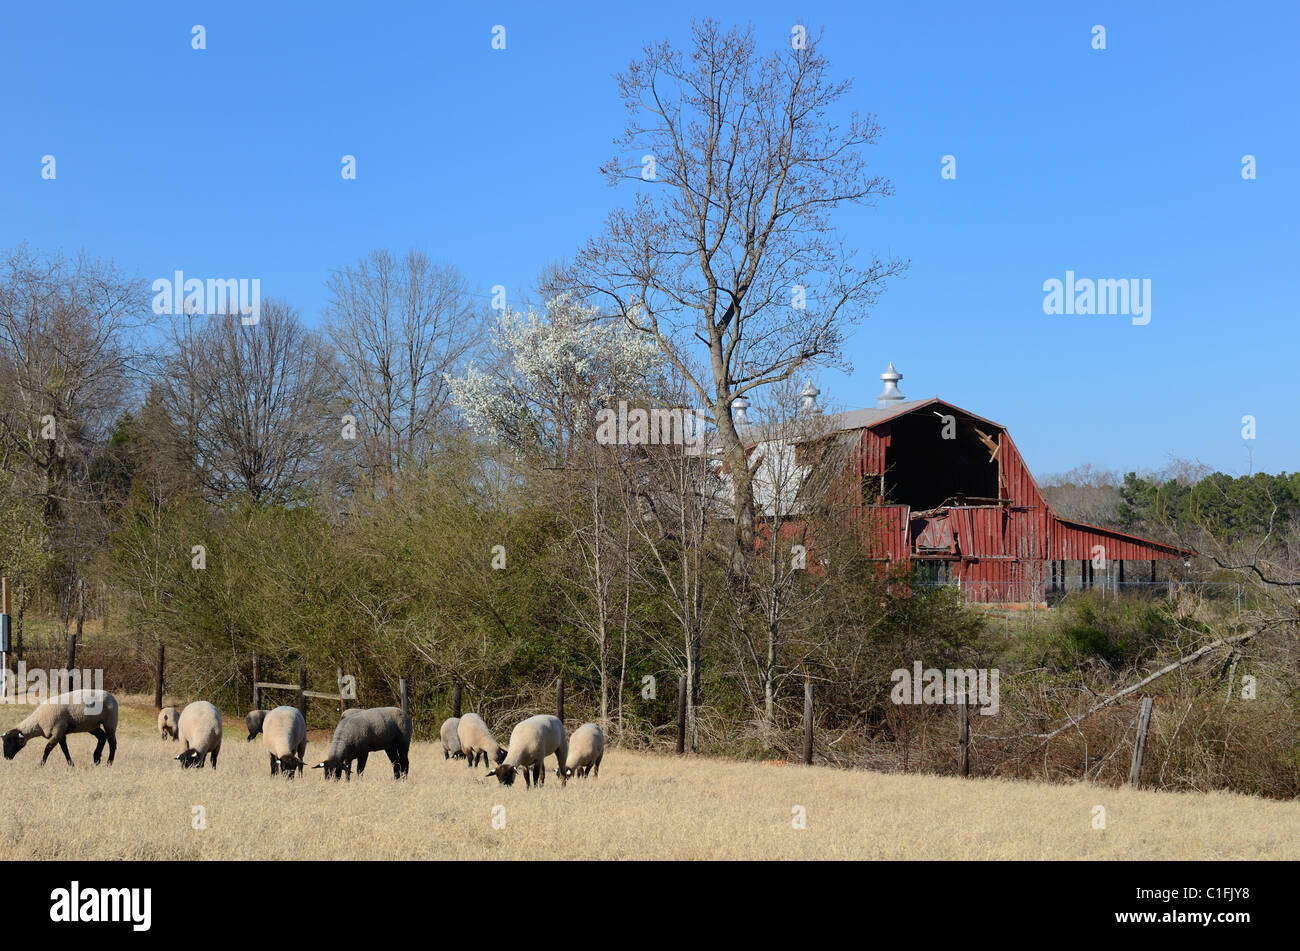 Suffolk sheep grazing near an old bar. Stock Photo